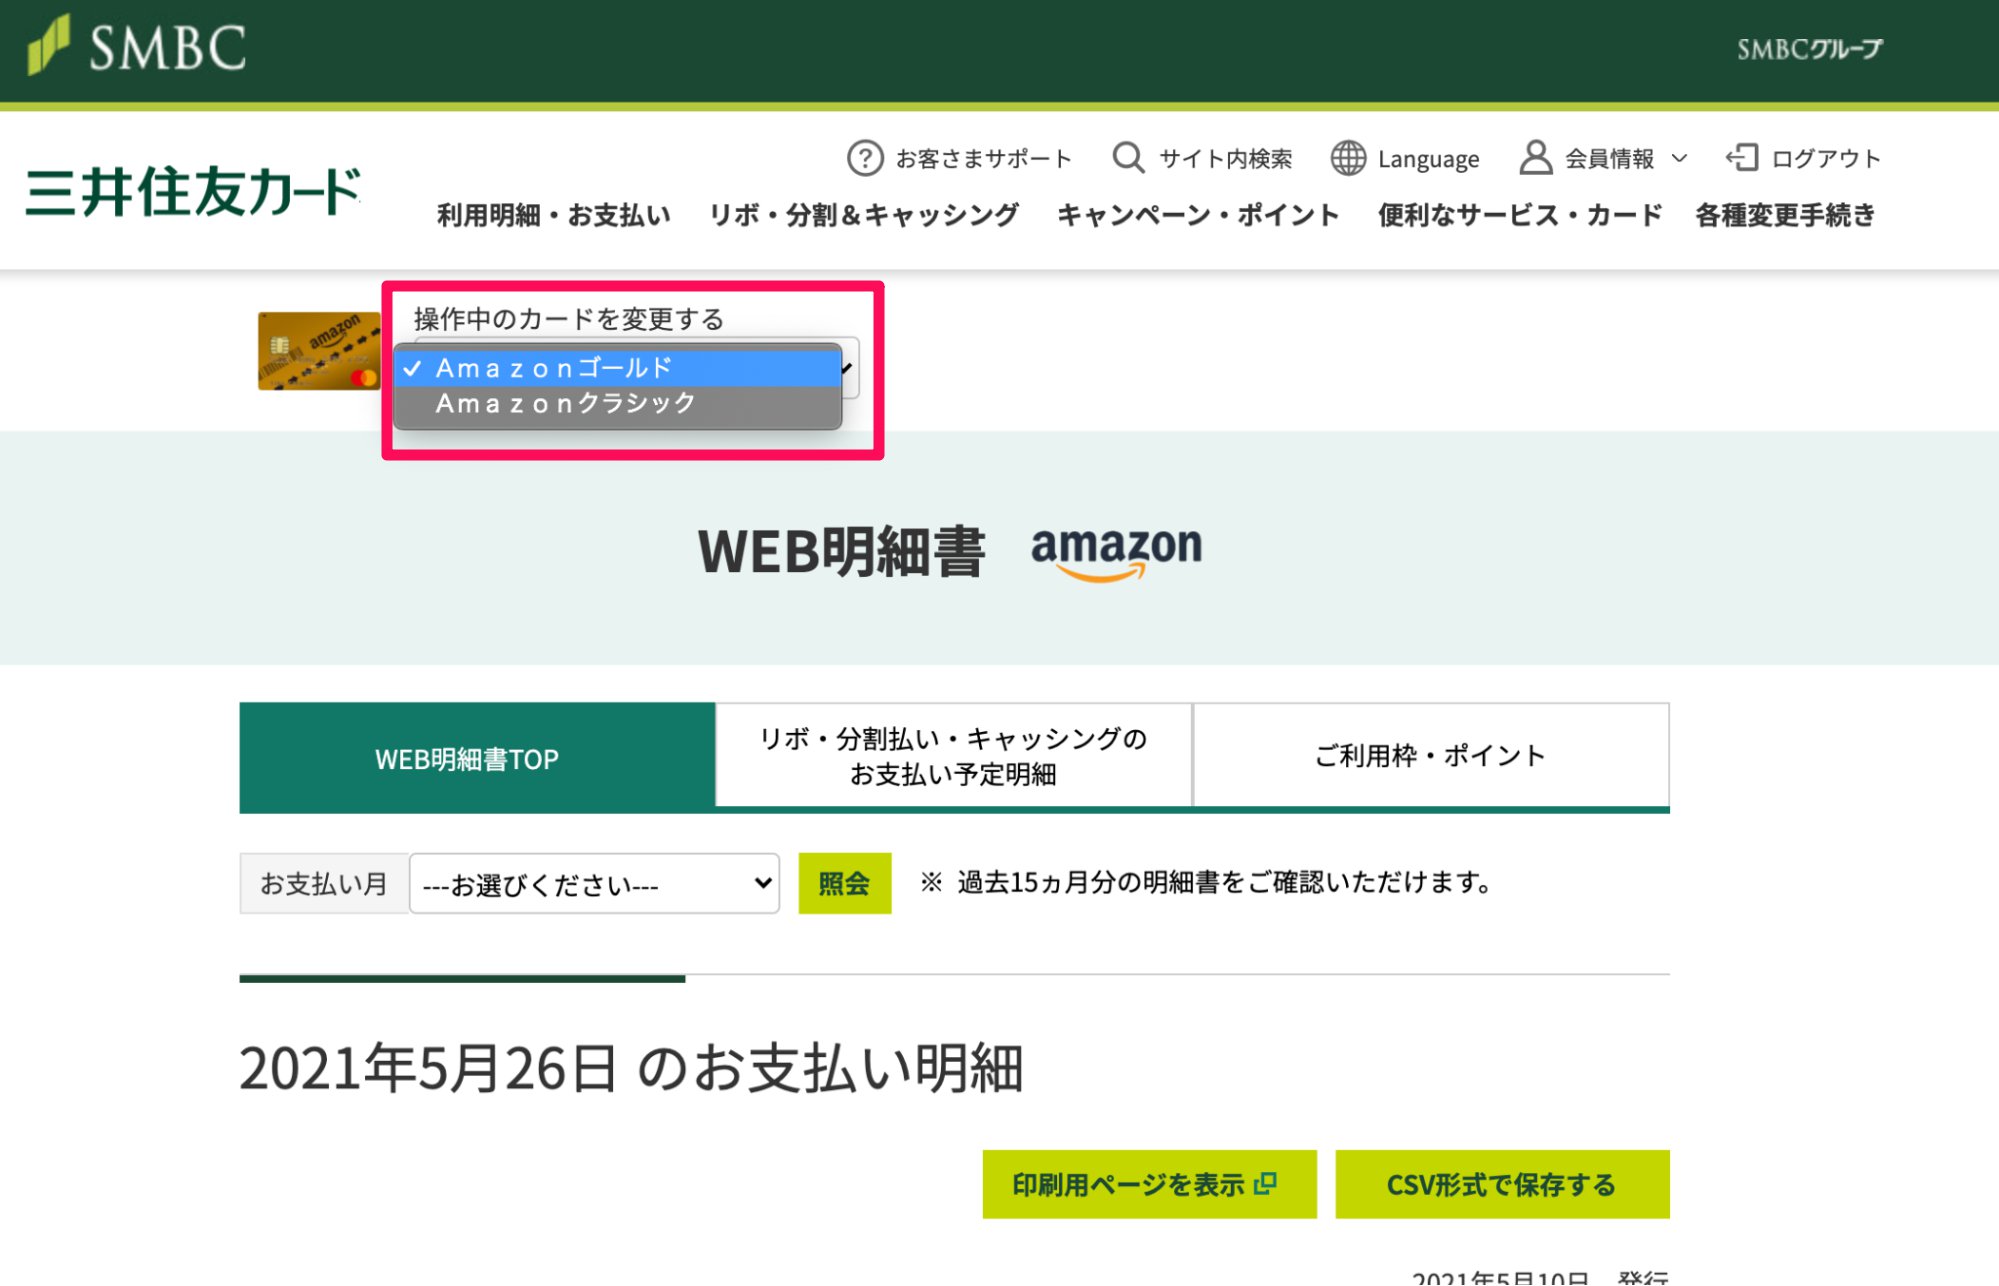 三井住友カードの画面表示例。「WEB明細書TOP」画面左上の「捜査中のカードを変更する」項目のプルダウンから、カード種別を切り替えることができる。